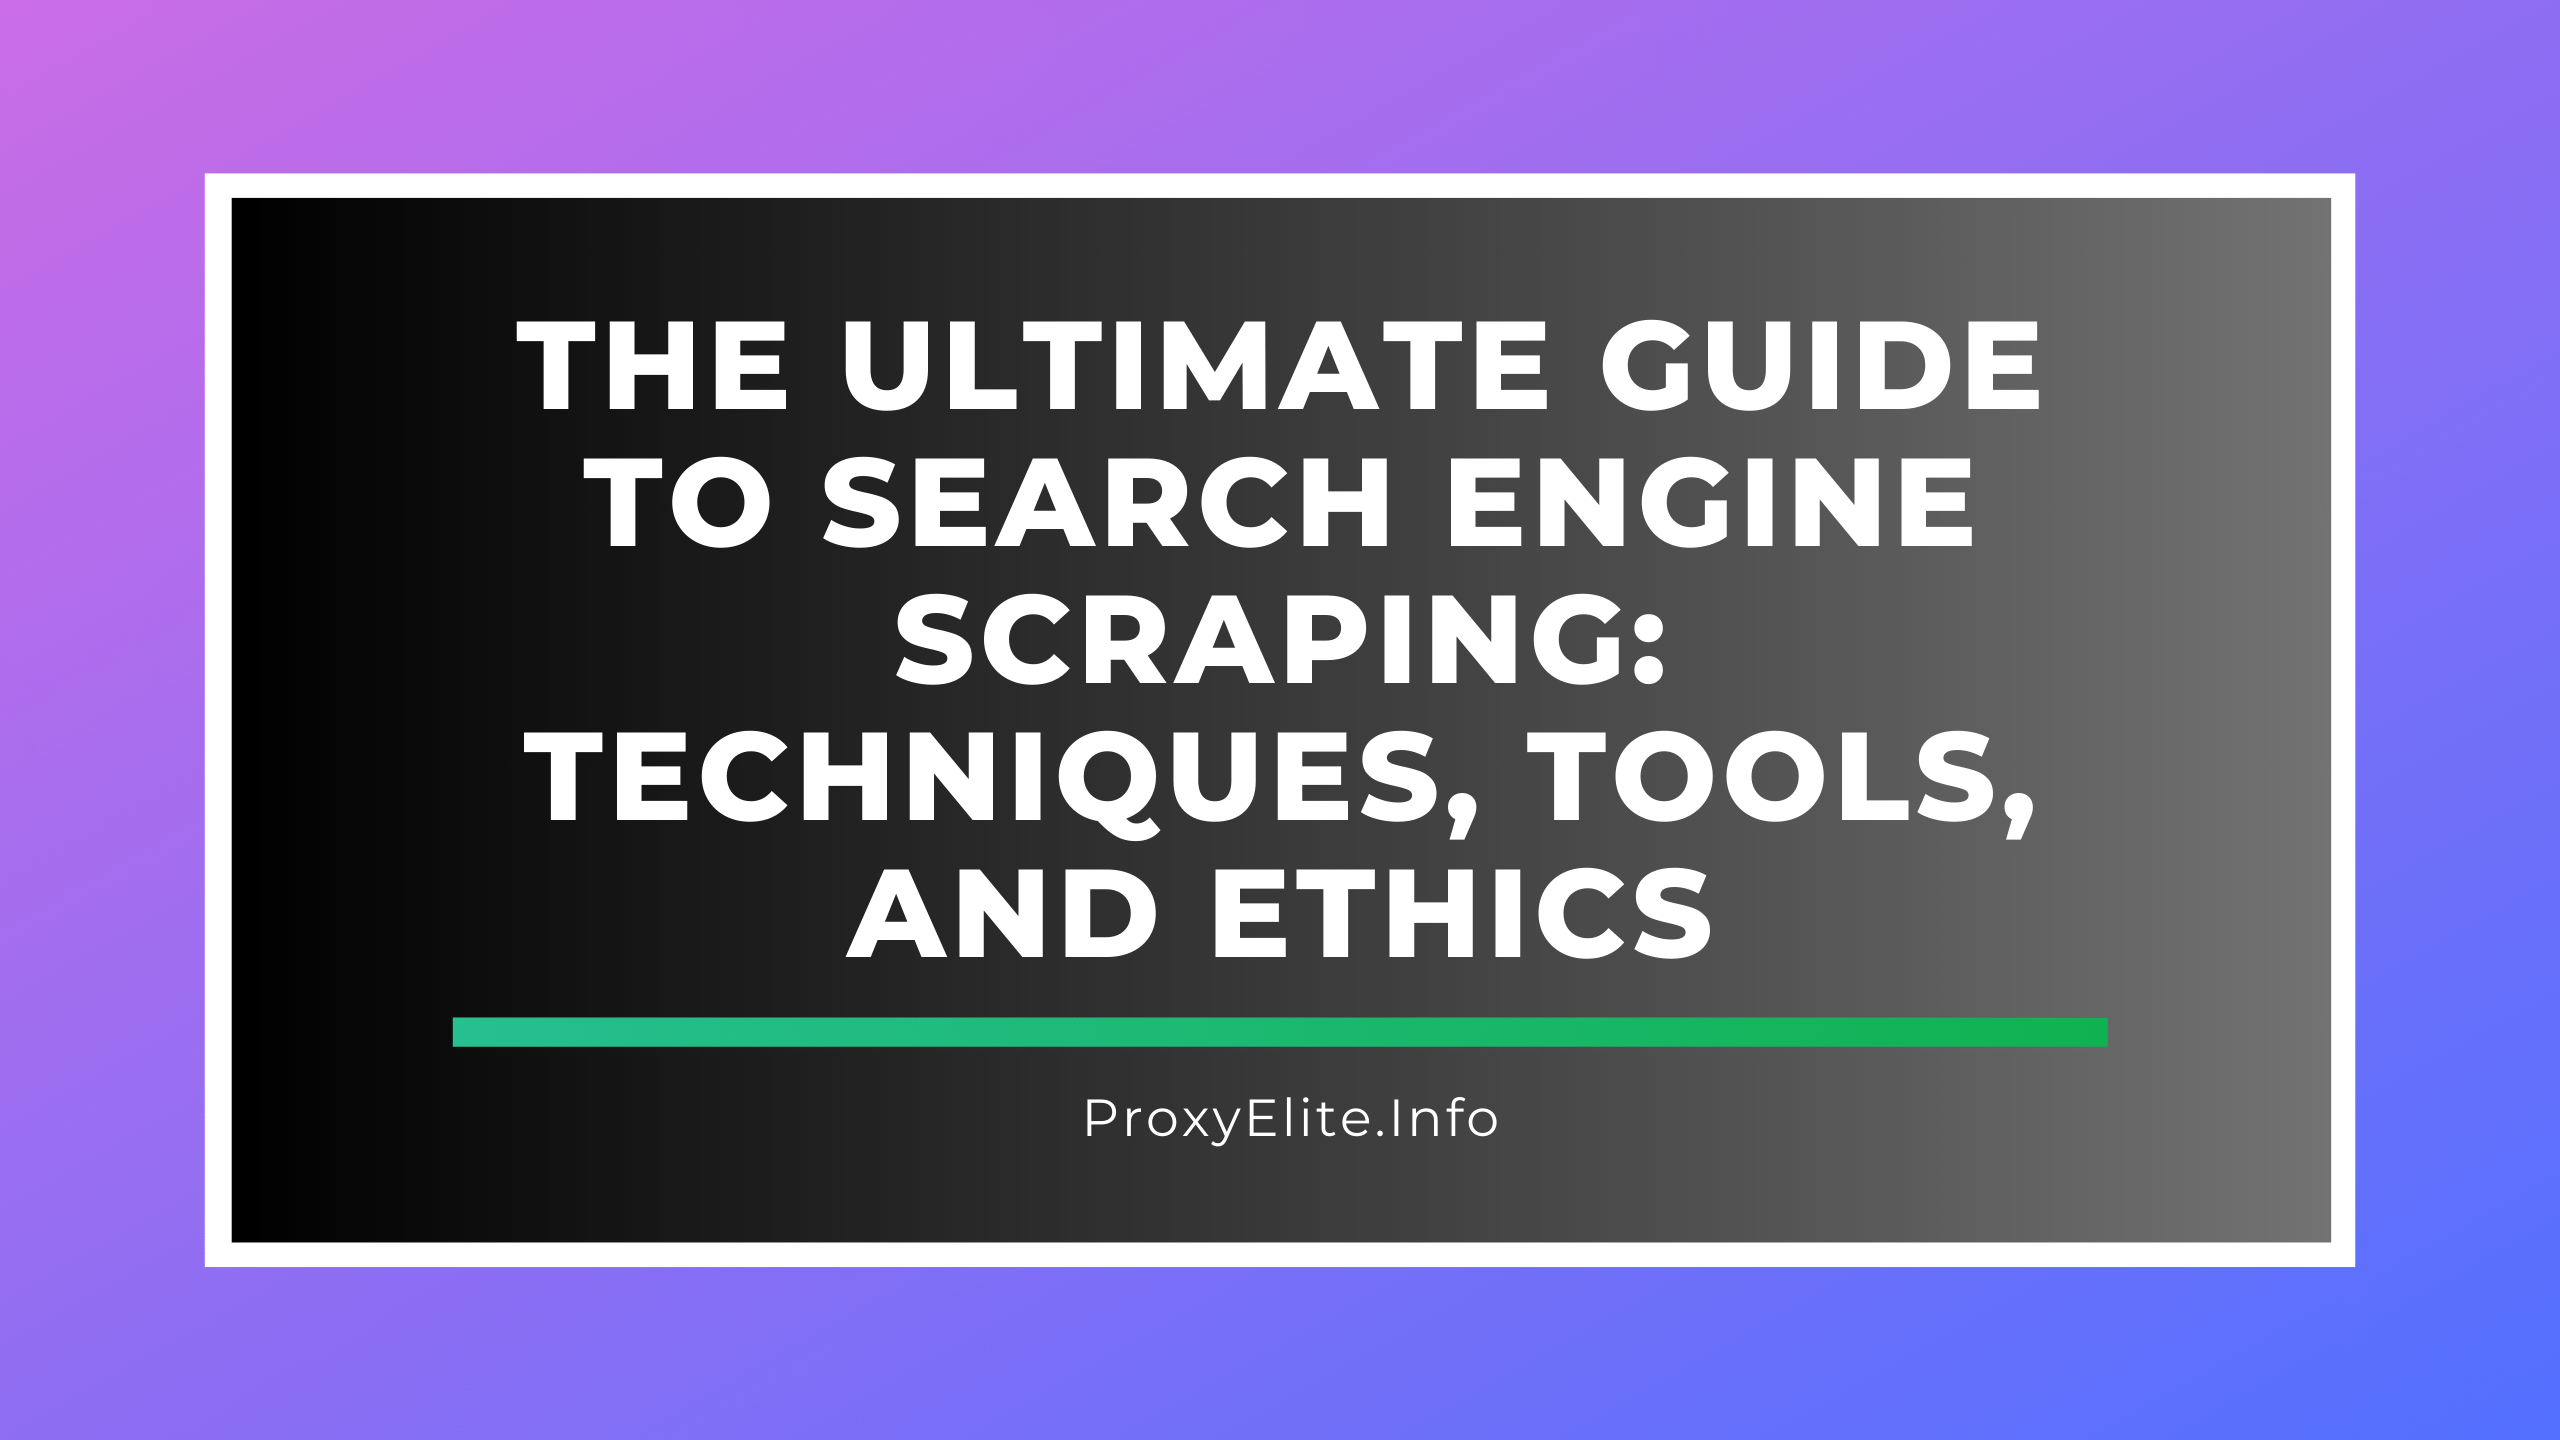 Hướng dẫn cơ bản về tìm kiếm trên công cụ tìm kiếm: Kỹ thuật, công cụ và đạo đức